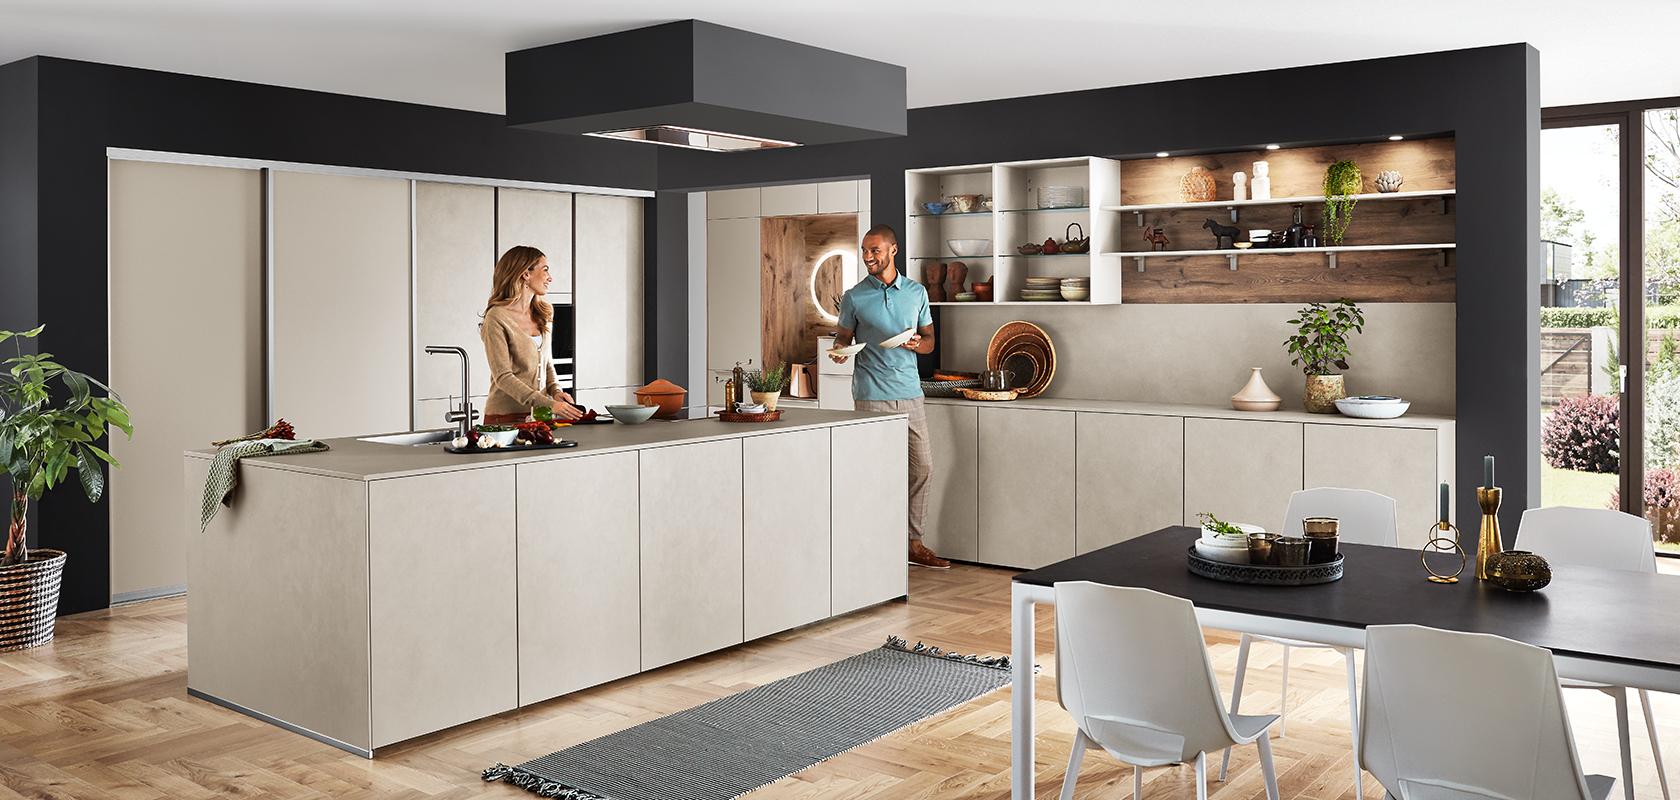 Elegantní moderní design kuchyně s centrálním ostrovem, otevřenými policemi a vestavěnými spotřebiči, kde pár užívá konverzaci u pracovní desky.